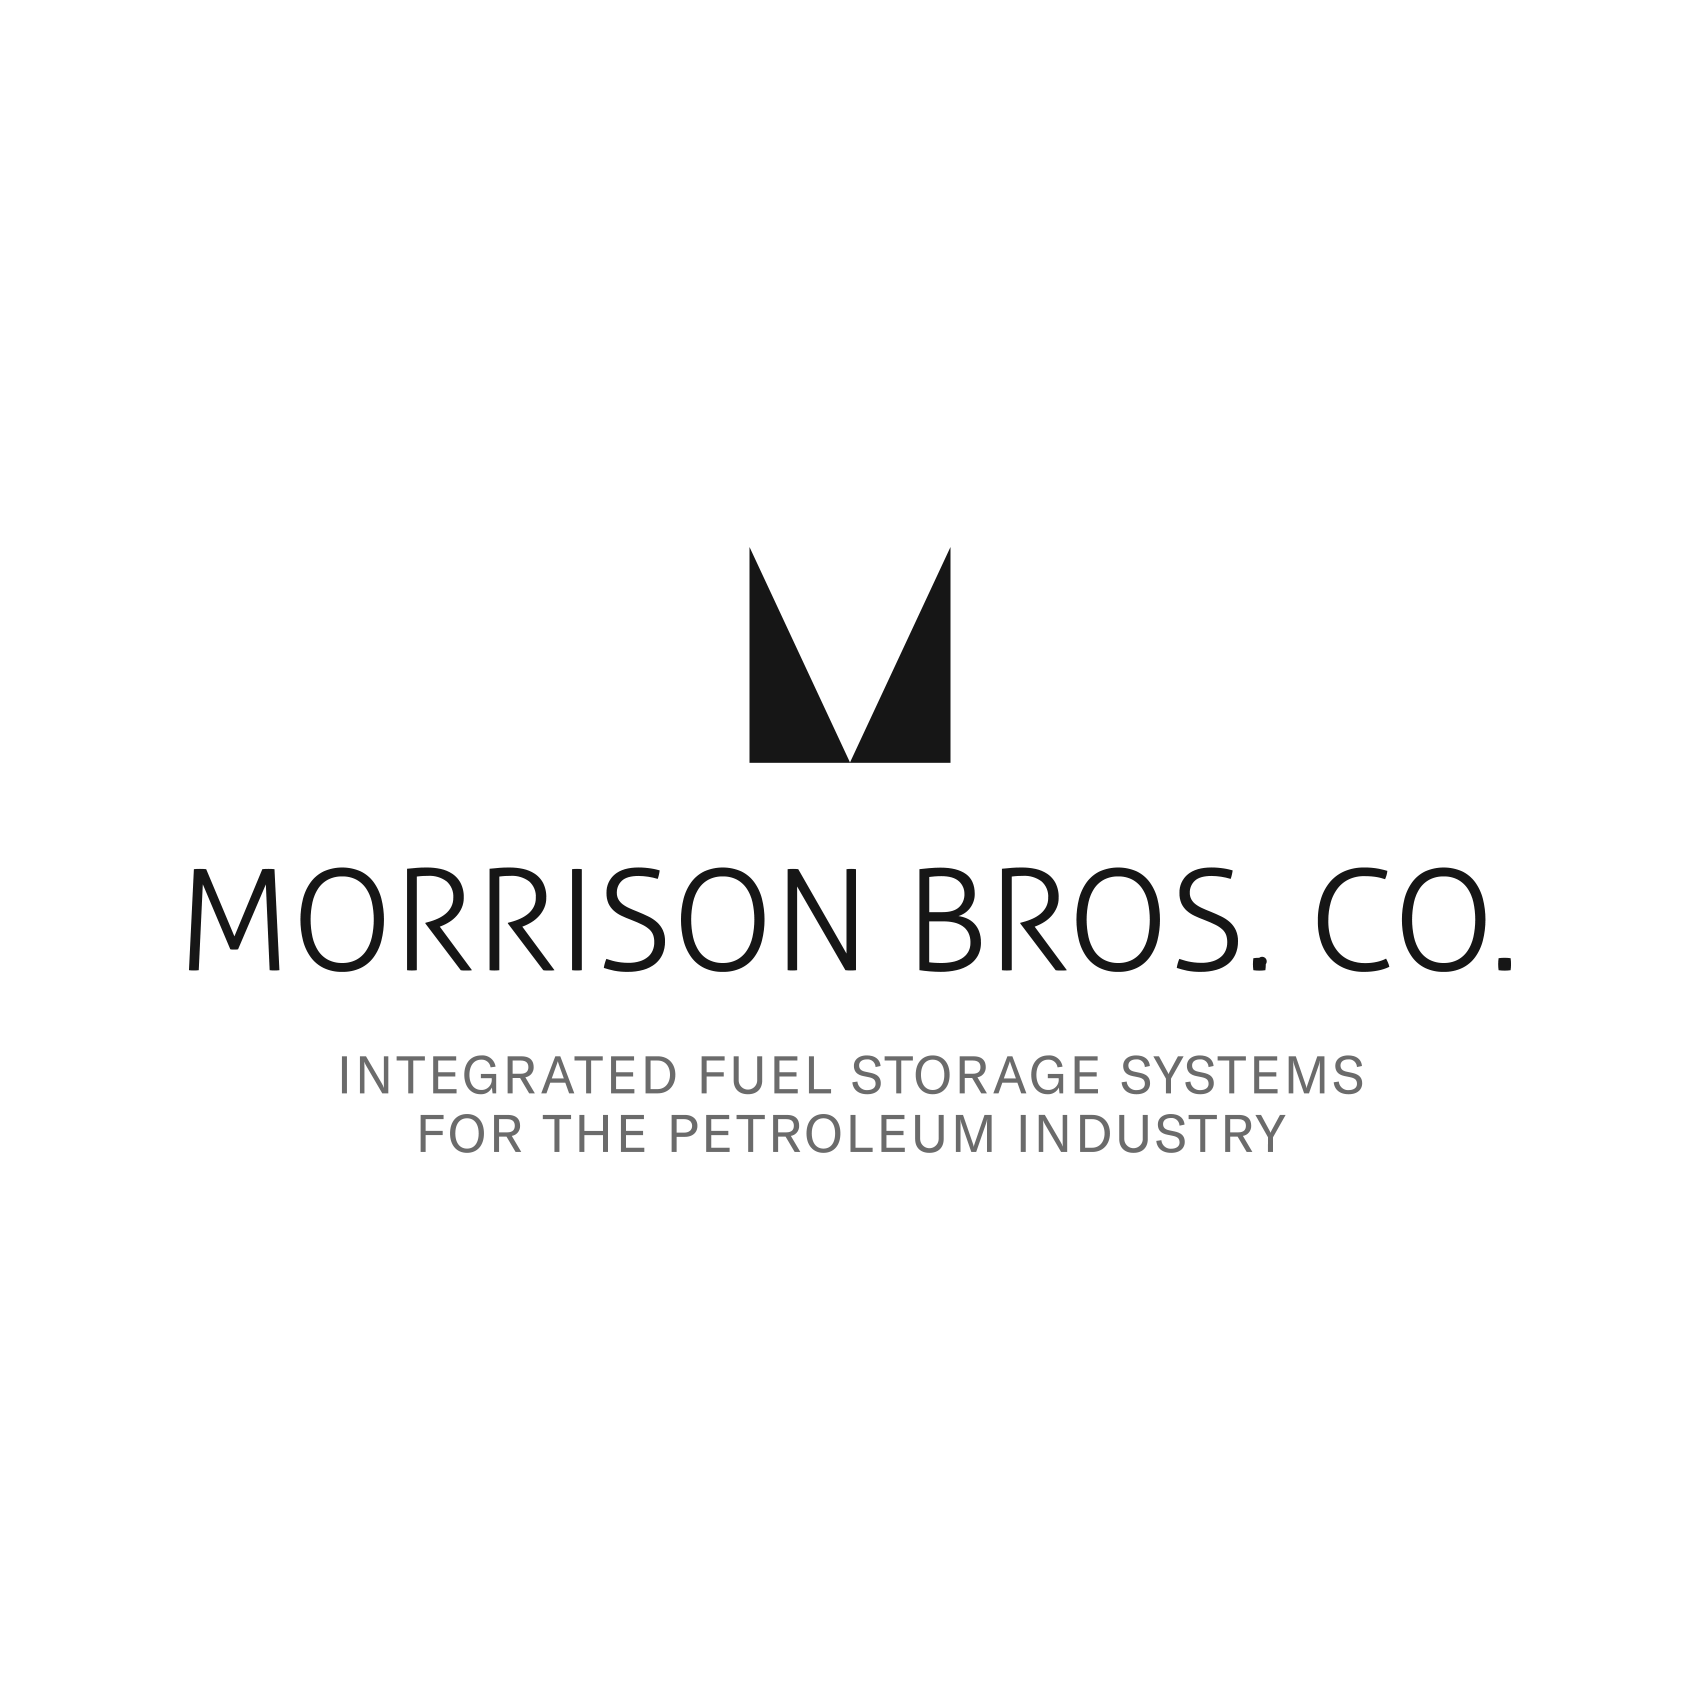 Morrison Bros Co Logo.png